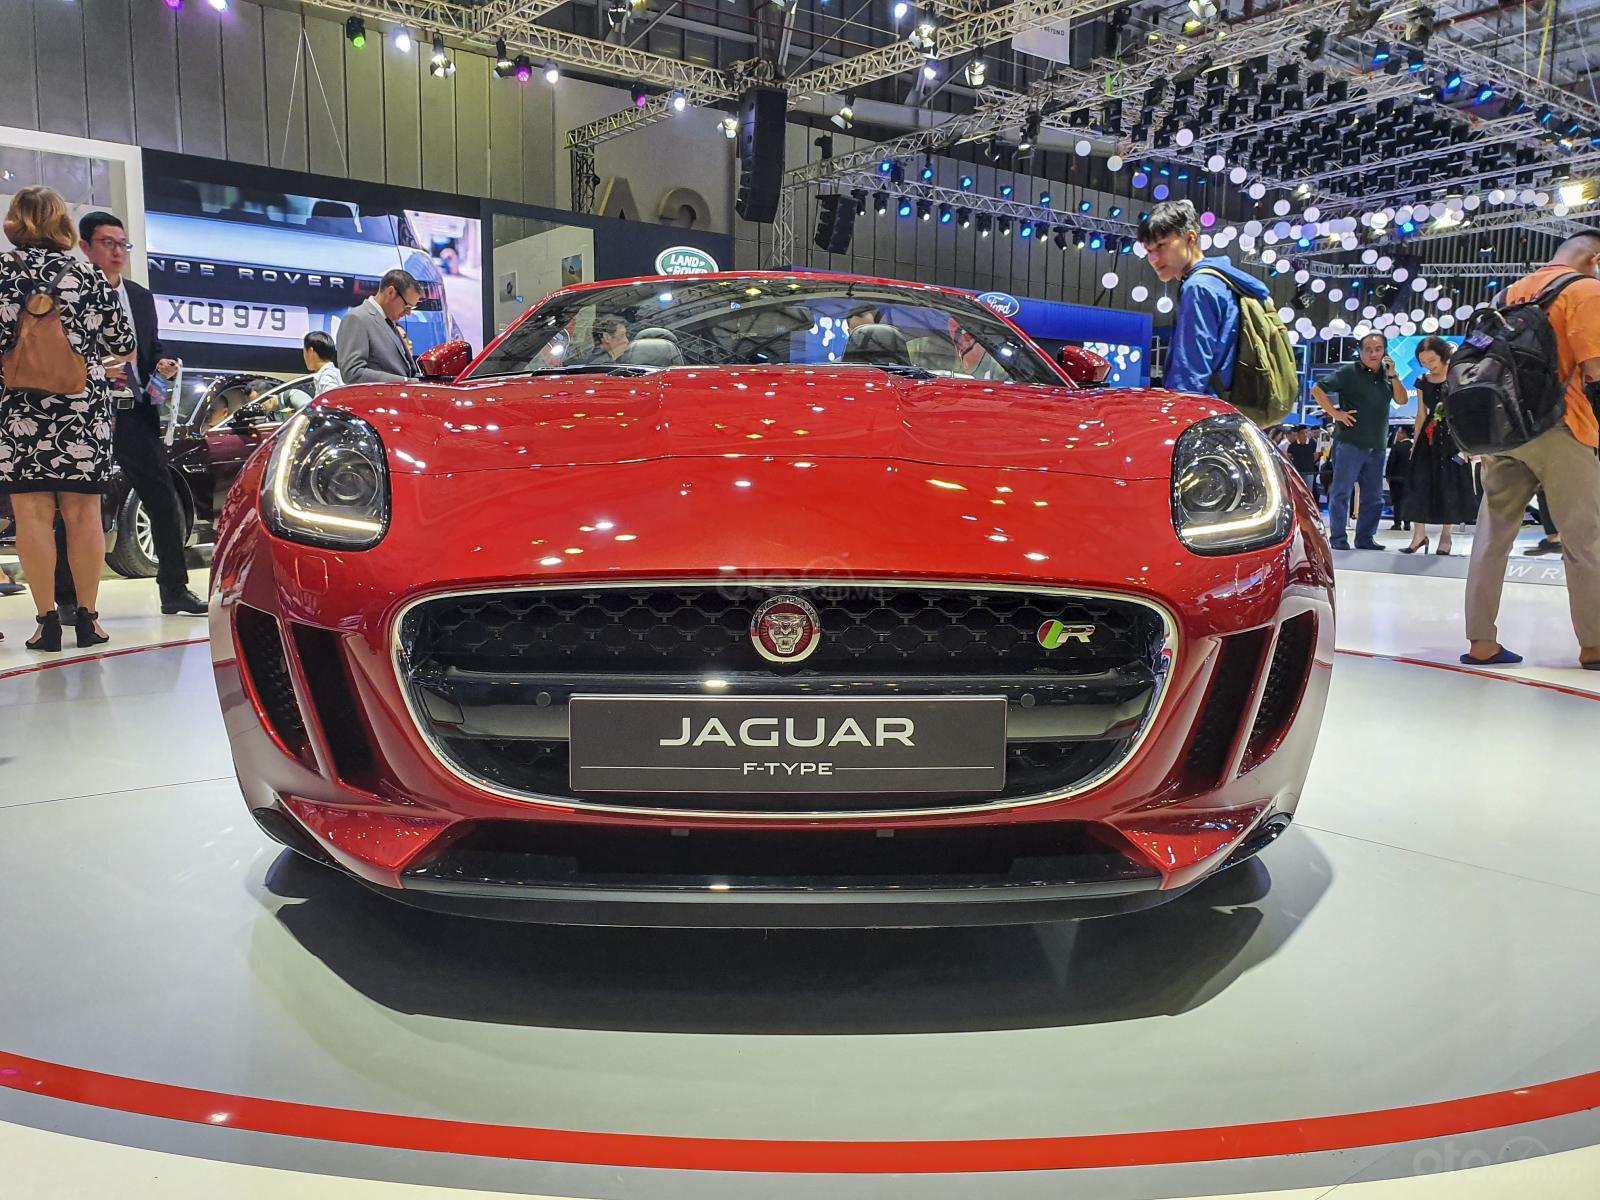 [VMS 2019] Jaguar F-Type R Convertible giá hơn 13 tỷ đồng xuất hiện nổi bật tại gian hàng "báo gấm" - Ảnh 1.